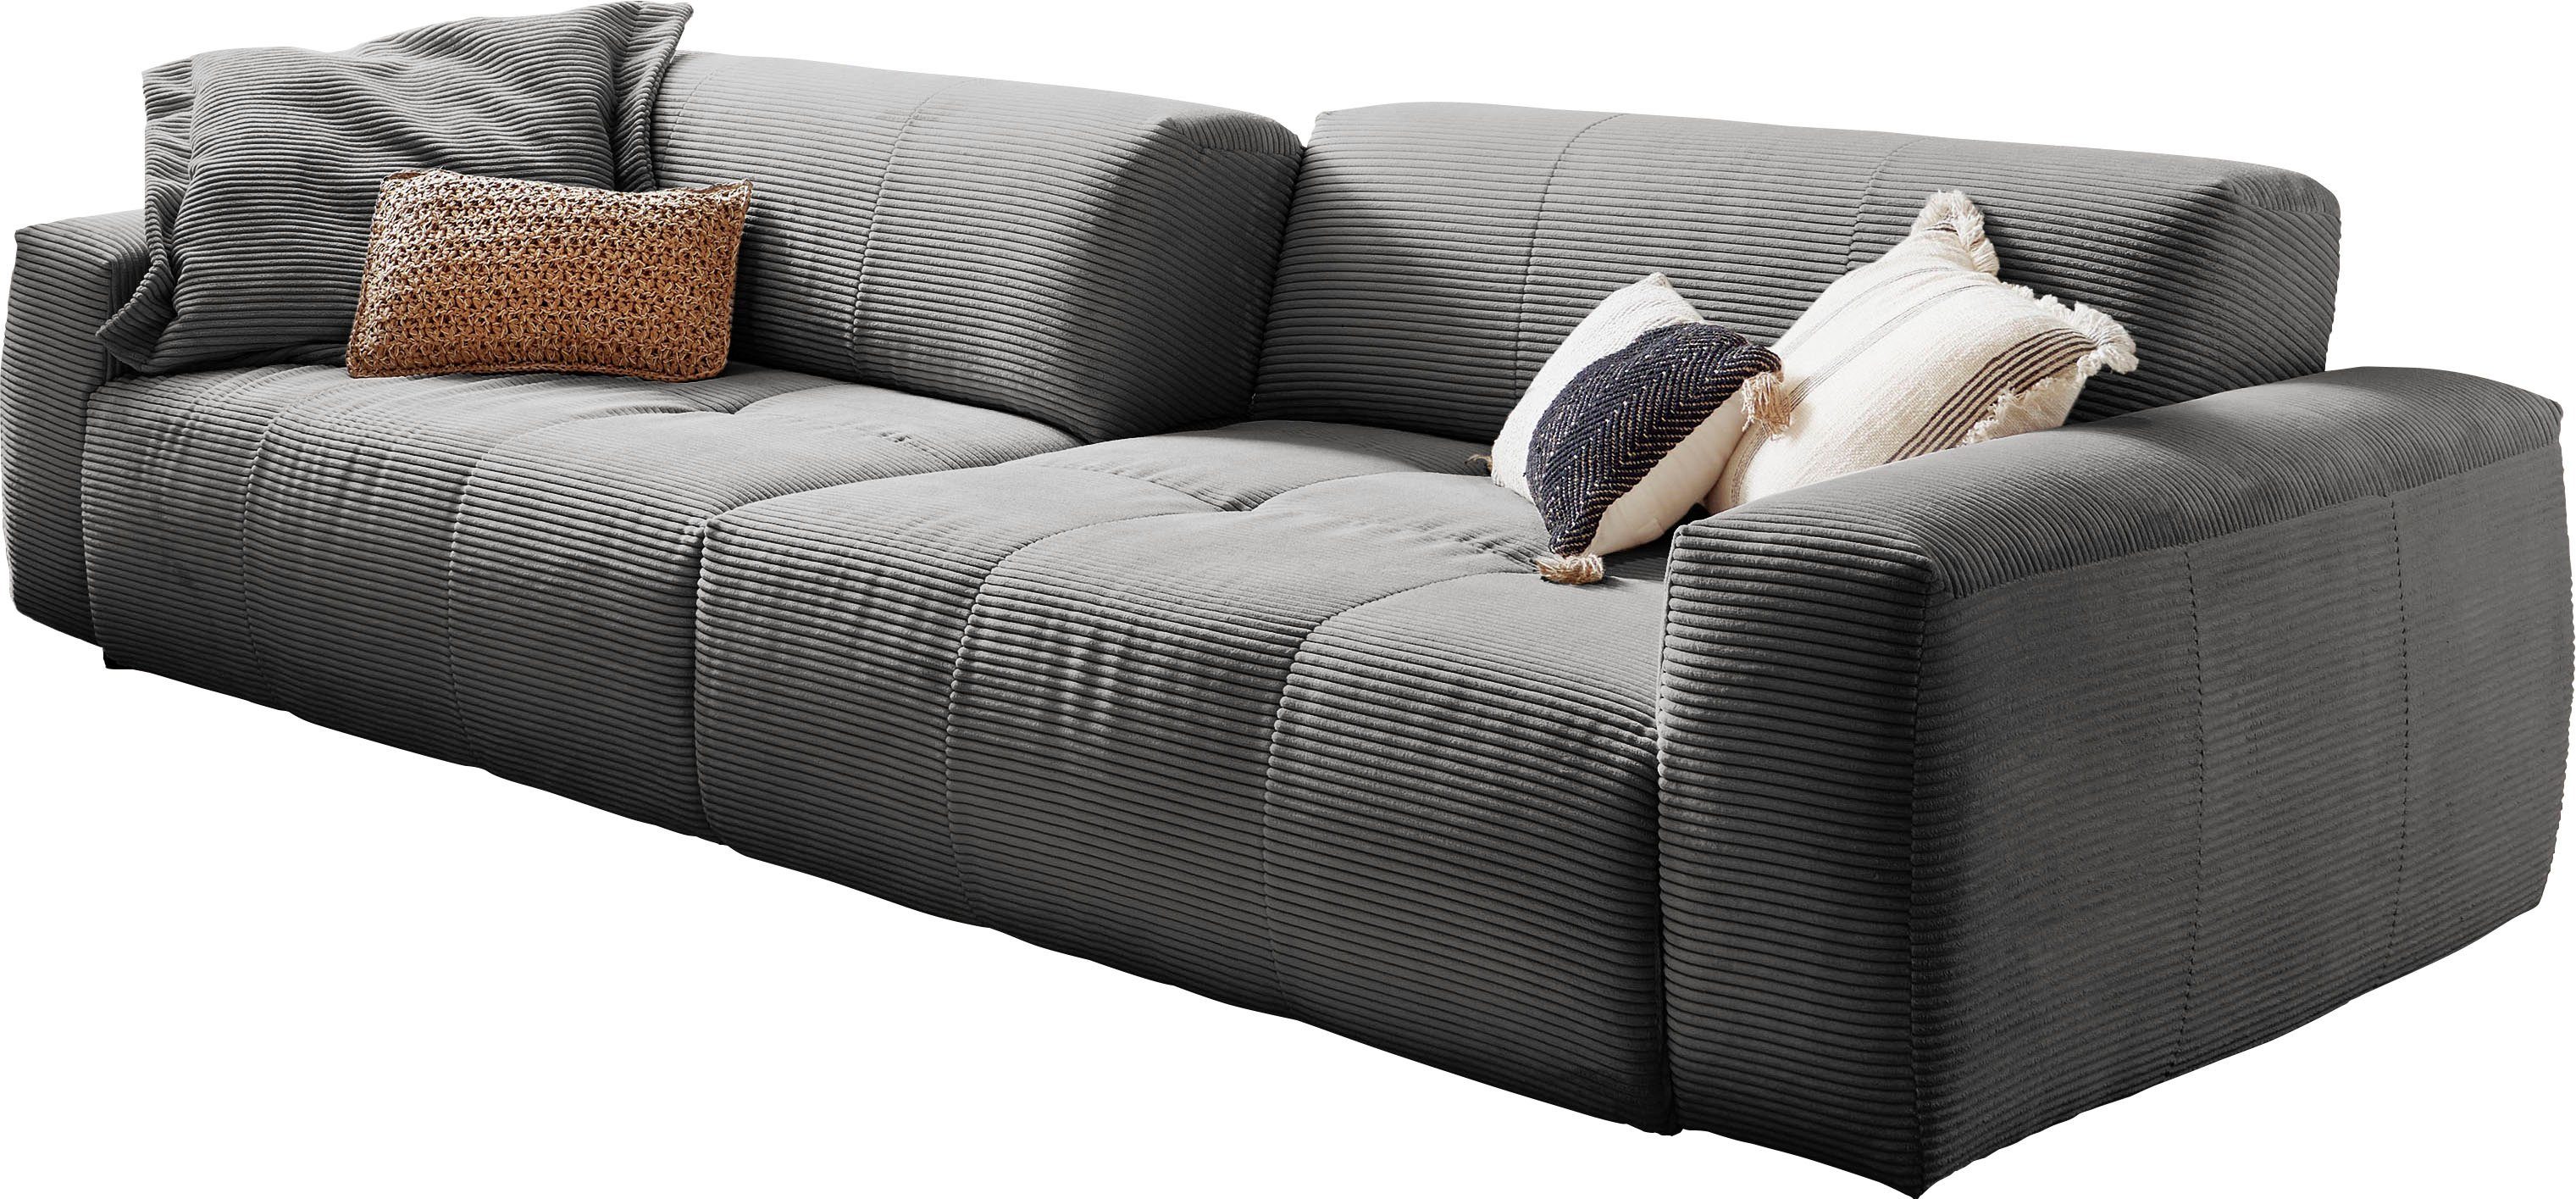 3C Candy Big-Sofa Yoshy, Zwei Sitztiefen durch verstellbare Rückenlehne, Bezug in Cord dunkelgrau